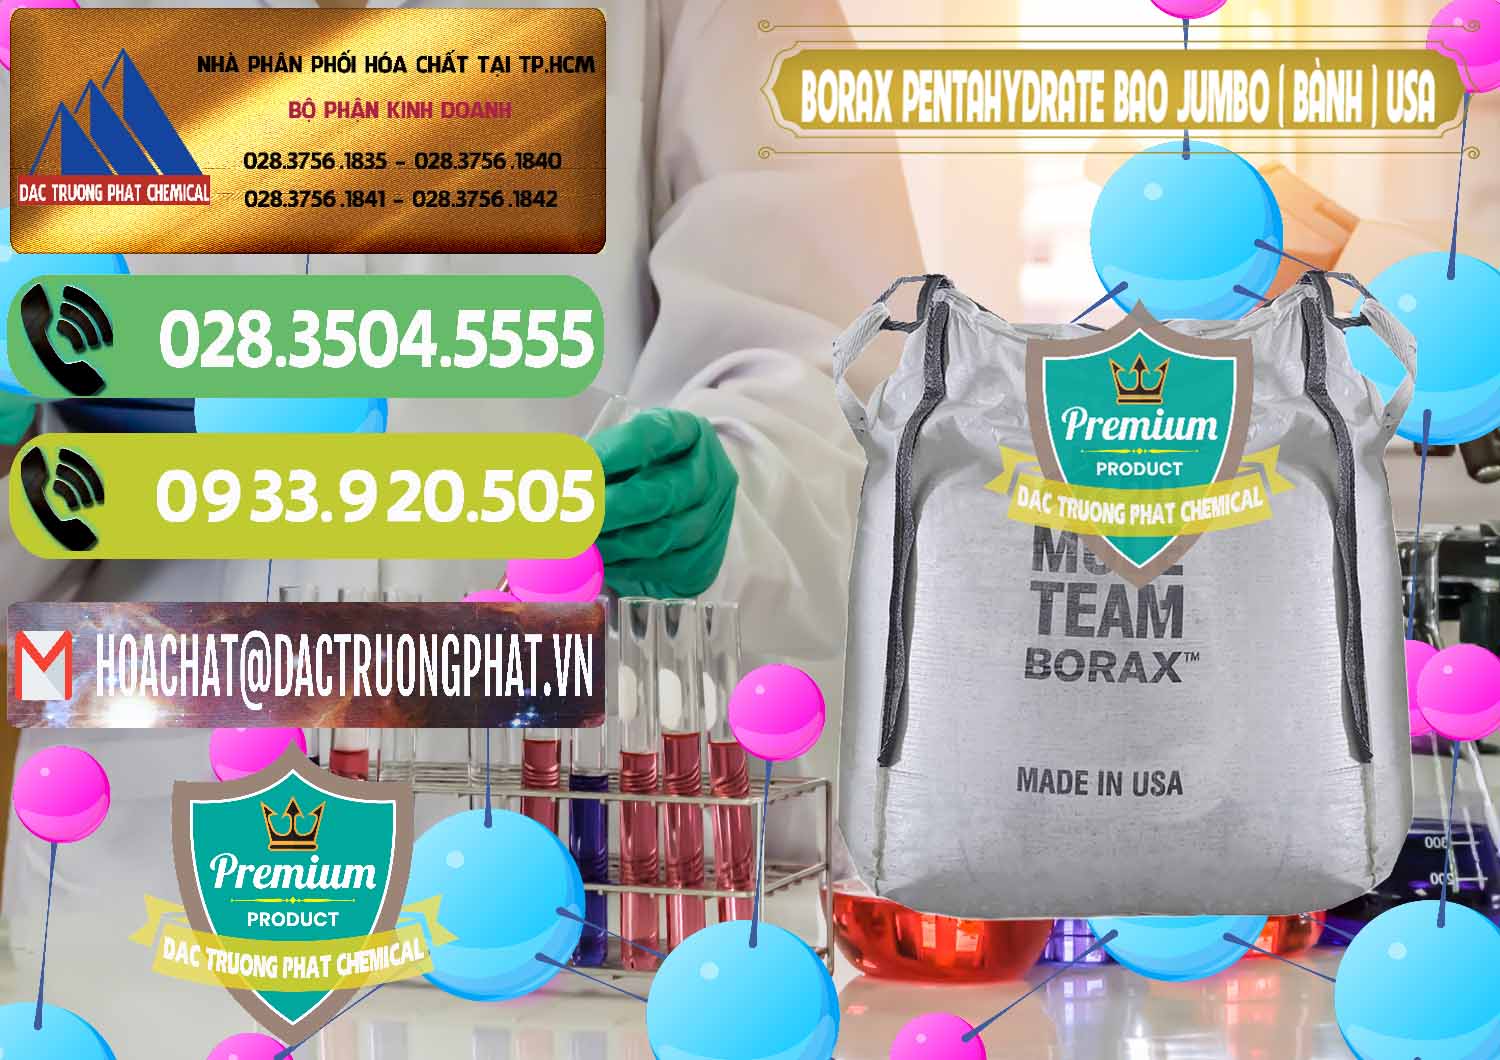 Đơn vị phân phối và bán Borax Pentahydrate Bao Jumbo ( Bành ) Mule 20 Team Mỹ Usa - 0278 - Nhà cung cấp _ bán hóa chất tại TP.HCM - hoachatmientay.vn